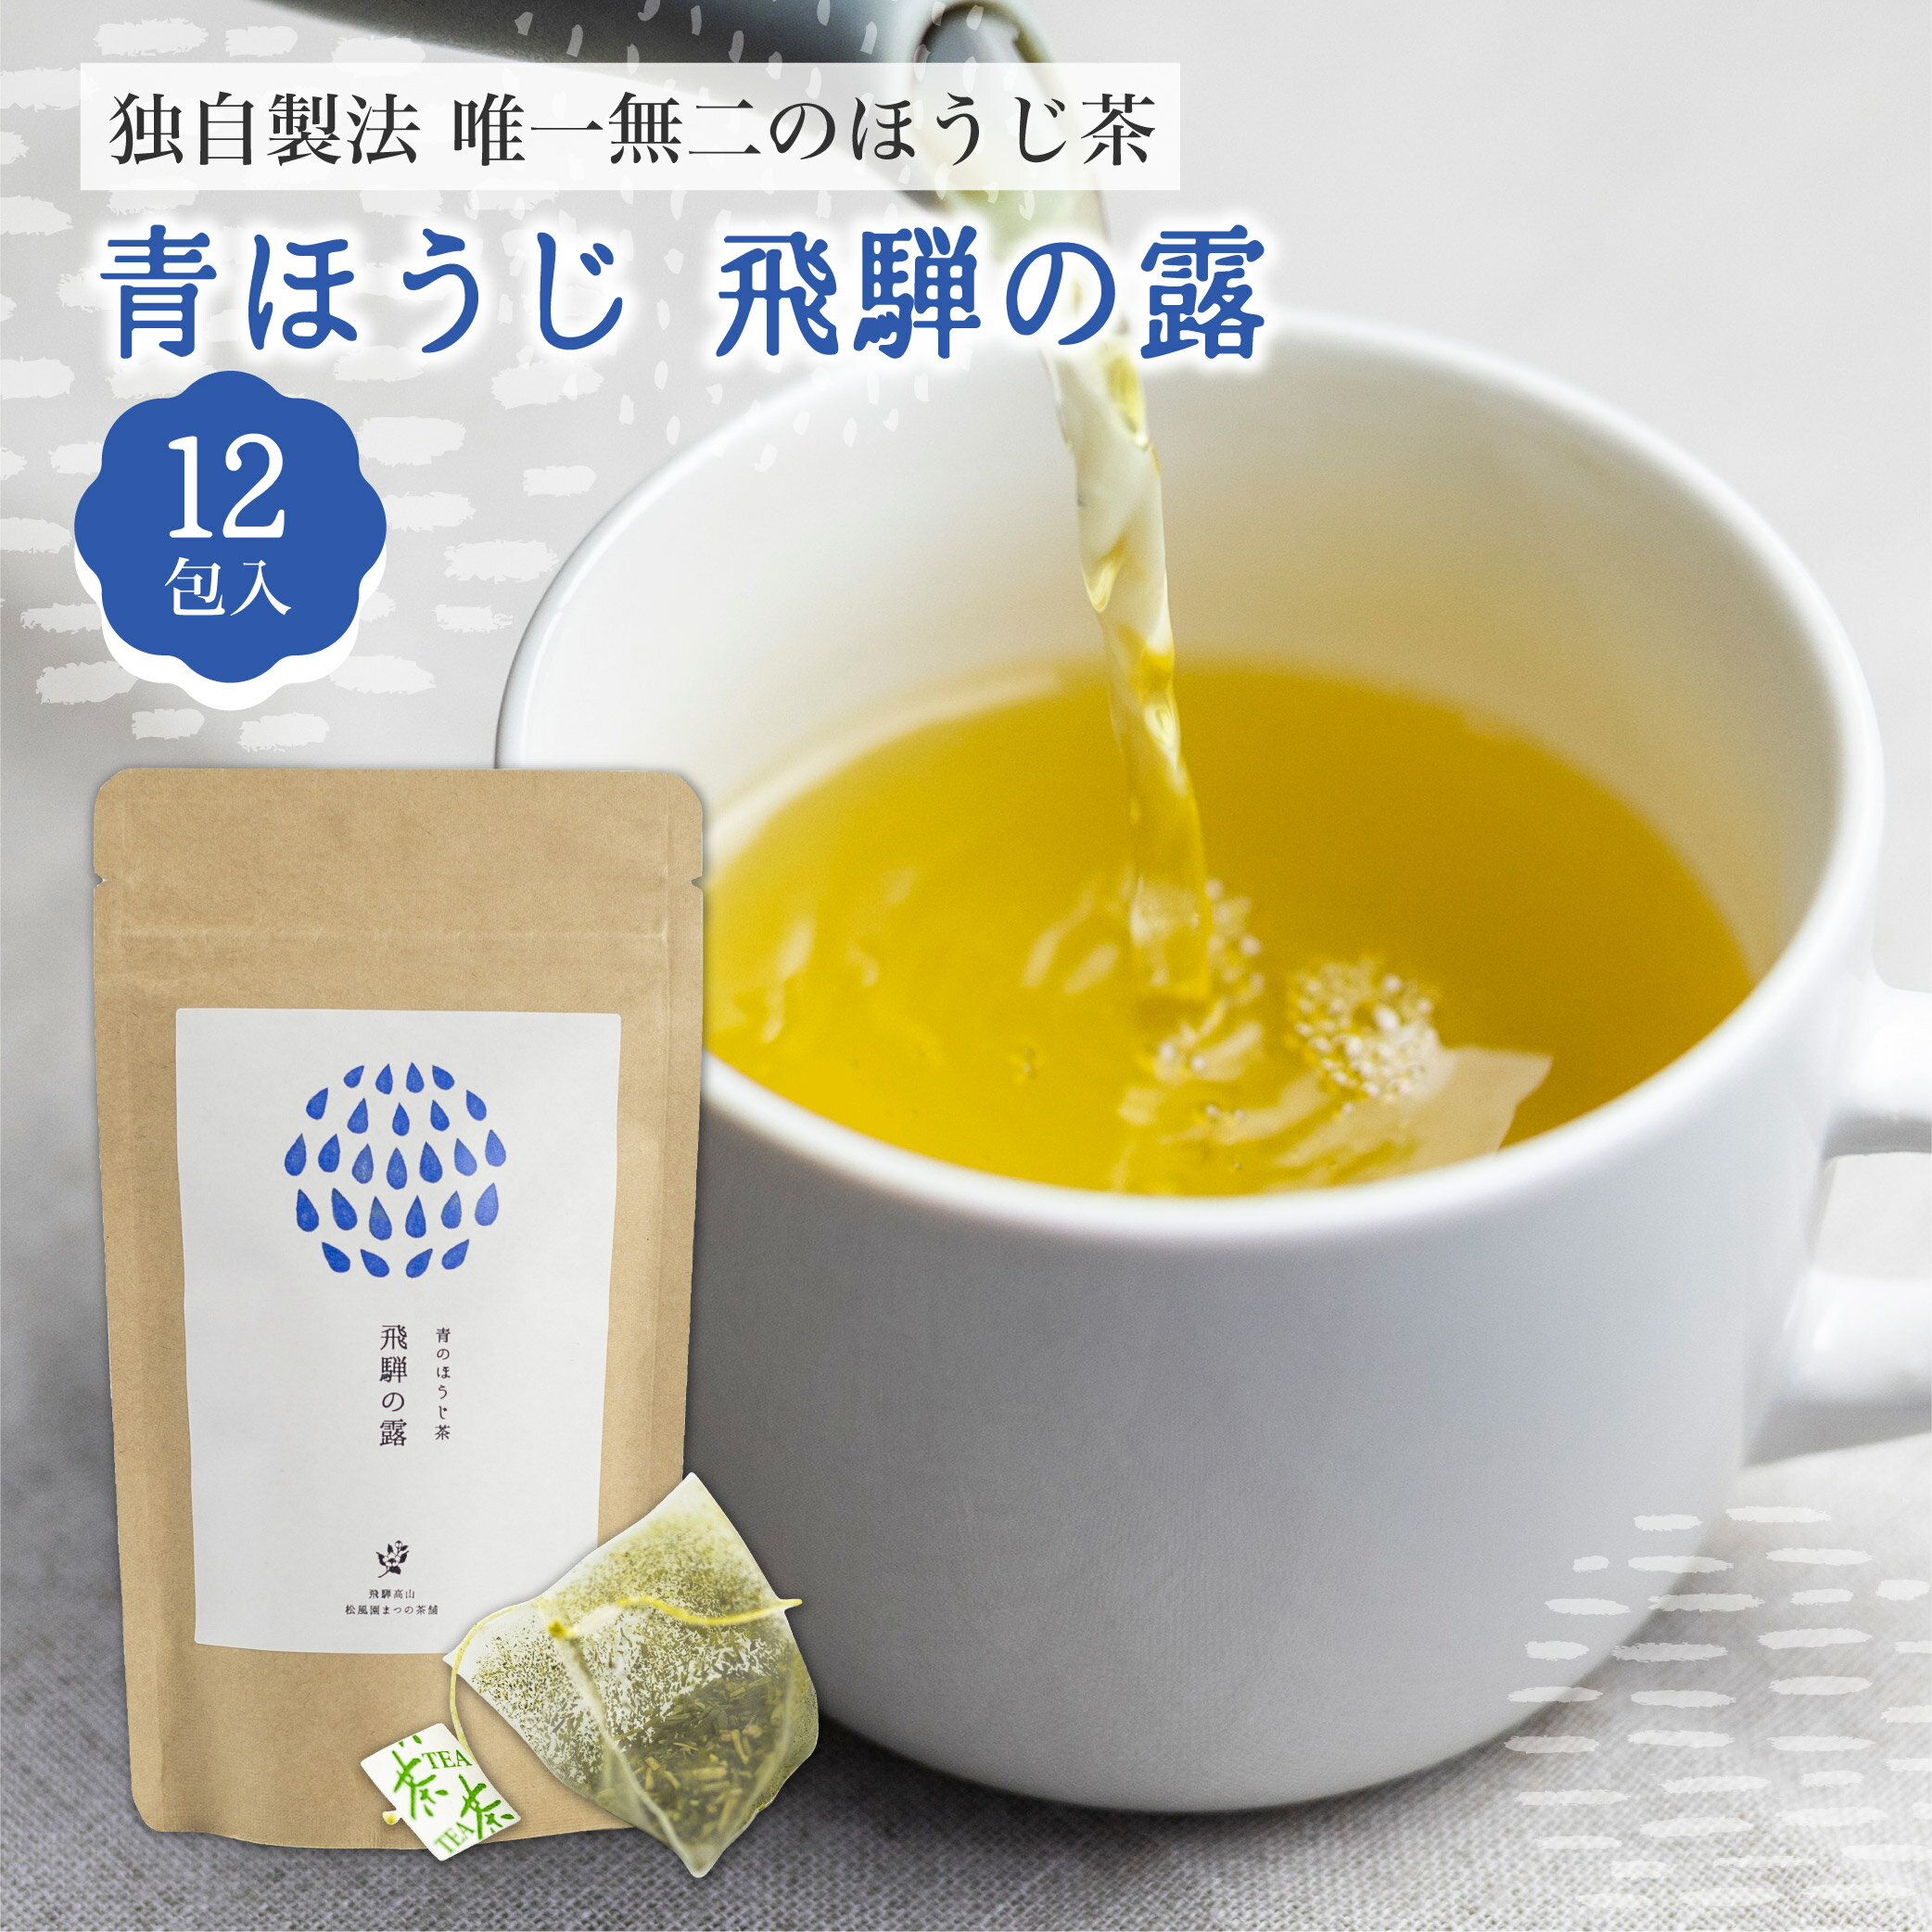 「ほうじ茶の新たな味わいを」 まつの茶舗独自製法で仕上げる、唯一無二のほうじ茶「青ほうじ 飛騨の露」 青ほうじ茶とは、その年に茶葉を積み始める時期の一番最初に摘まれ、旨味が多い一番茶のみを使用し、独自の青焙じ手法にて仕上げたお茶です。 通常緑茶として飲まれる茶葉をほうじ茶へ加工した、日本でもなかなか味わえないほうじ茶。 緑茶の風味を感じつつ、ほうじ茶として飲みやすく、茶葉の旨味を感じる味わいになっております。 味も香りも見た目もこのほうじ茶ならではです。 お茶の淹れ方は簡単です。 マグカップにティーバッグを入れて、お湯を注ぎます。 お好みの濃さにしていただき、お飲みください。 一つのティーバッグで2杯までお楽しみいただけます。 茶葉はお茶の産地としても有名な、美濃揖斐茶の一番茶を使用しており、青ほうじ茶に合うように契約農家が生産しております。 また本格的な味わいのお茶を気軽に楽しんでいただけるように、 ティーバッグにして、収納しやすく持ち運びに便利なサイズのパッケージにしております。 オフィスでちょっとひと休みしたい時に、お使いいただけます。 製造するのは、お茶を販売し80年以上のまつの茶舗。 味と香りのよい茶葉だけを厳選吟味し、オリジナルブレンドを提供しています。 青ほうじ茶は独自技術によって、50年以上守り続けている味です。 商品説明文 名称 まつの茶舗 青ほうじ茶 飛騨の露 商品詳細 青ほうじ茶とは、その年に茶葉を積み始める時期の一番最初に摘まれ、旨味が多い一番茶のみを使用し、独自の青焙じ手法にて仕上げたお茶です。 通常緑茶として飲まれる茶葉をほうじ茶へ加工した、日本でもなかなか味わえないほうじ茶。 緑茶の風味を感じつつ、ほうじ茶として飲みやすく、茶葉の旨味を感じる味わいになっております。 味も香りも見た目もこのほうじ茶ならではです。 内容量 ほうじ茶 ティーバッグ 3g×12包入り 原材料 緑茶 賞味期限 約60日 配送方法 常温にてお届け致します。